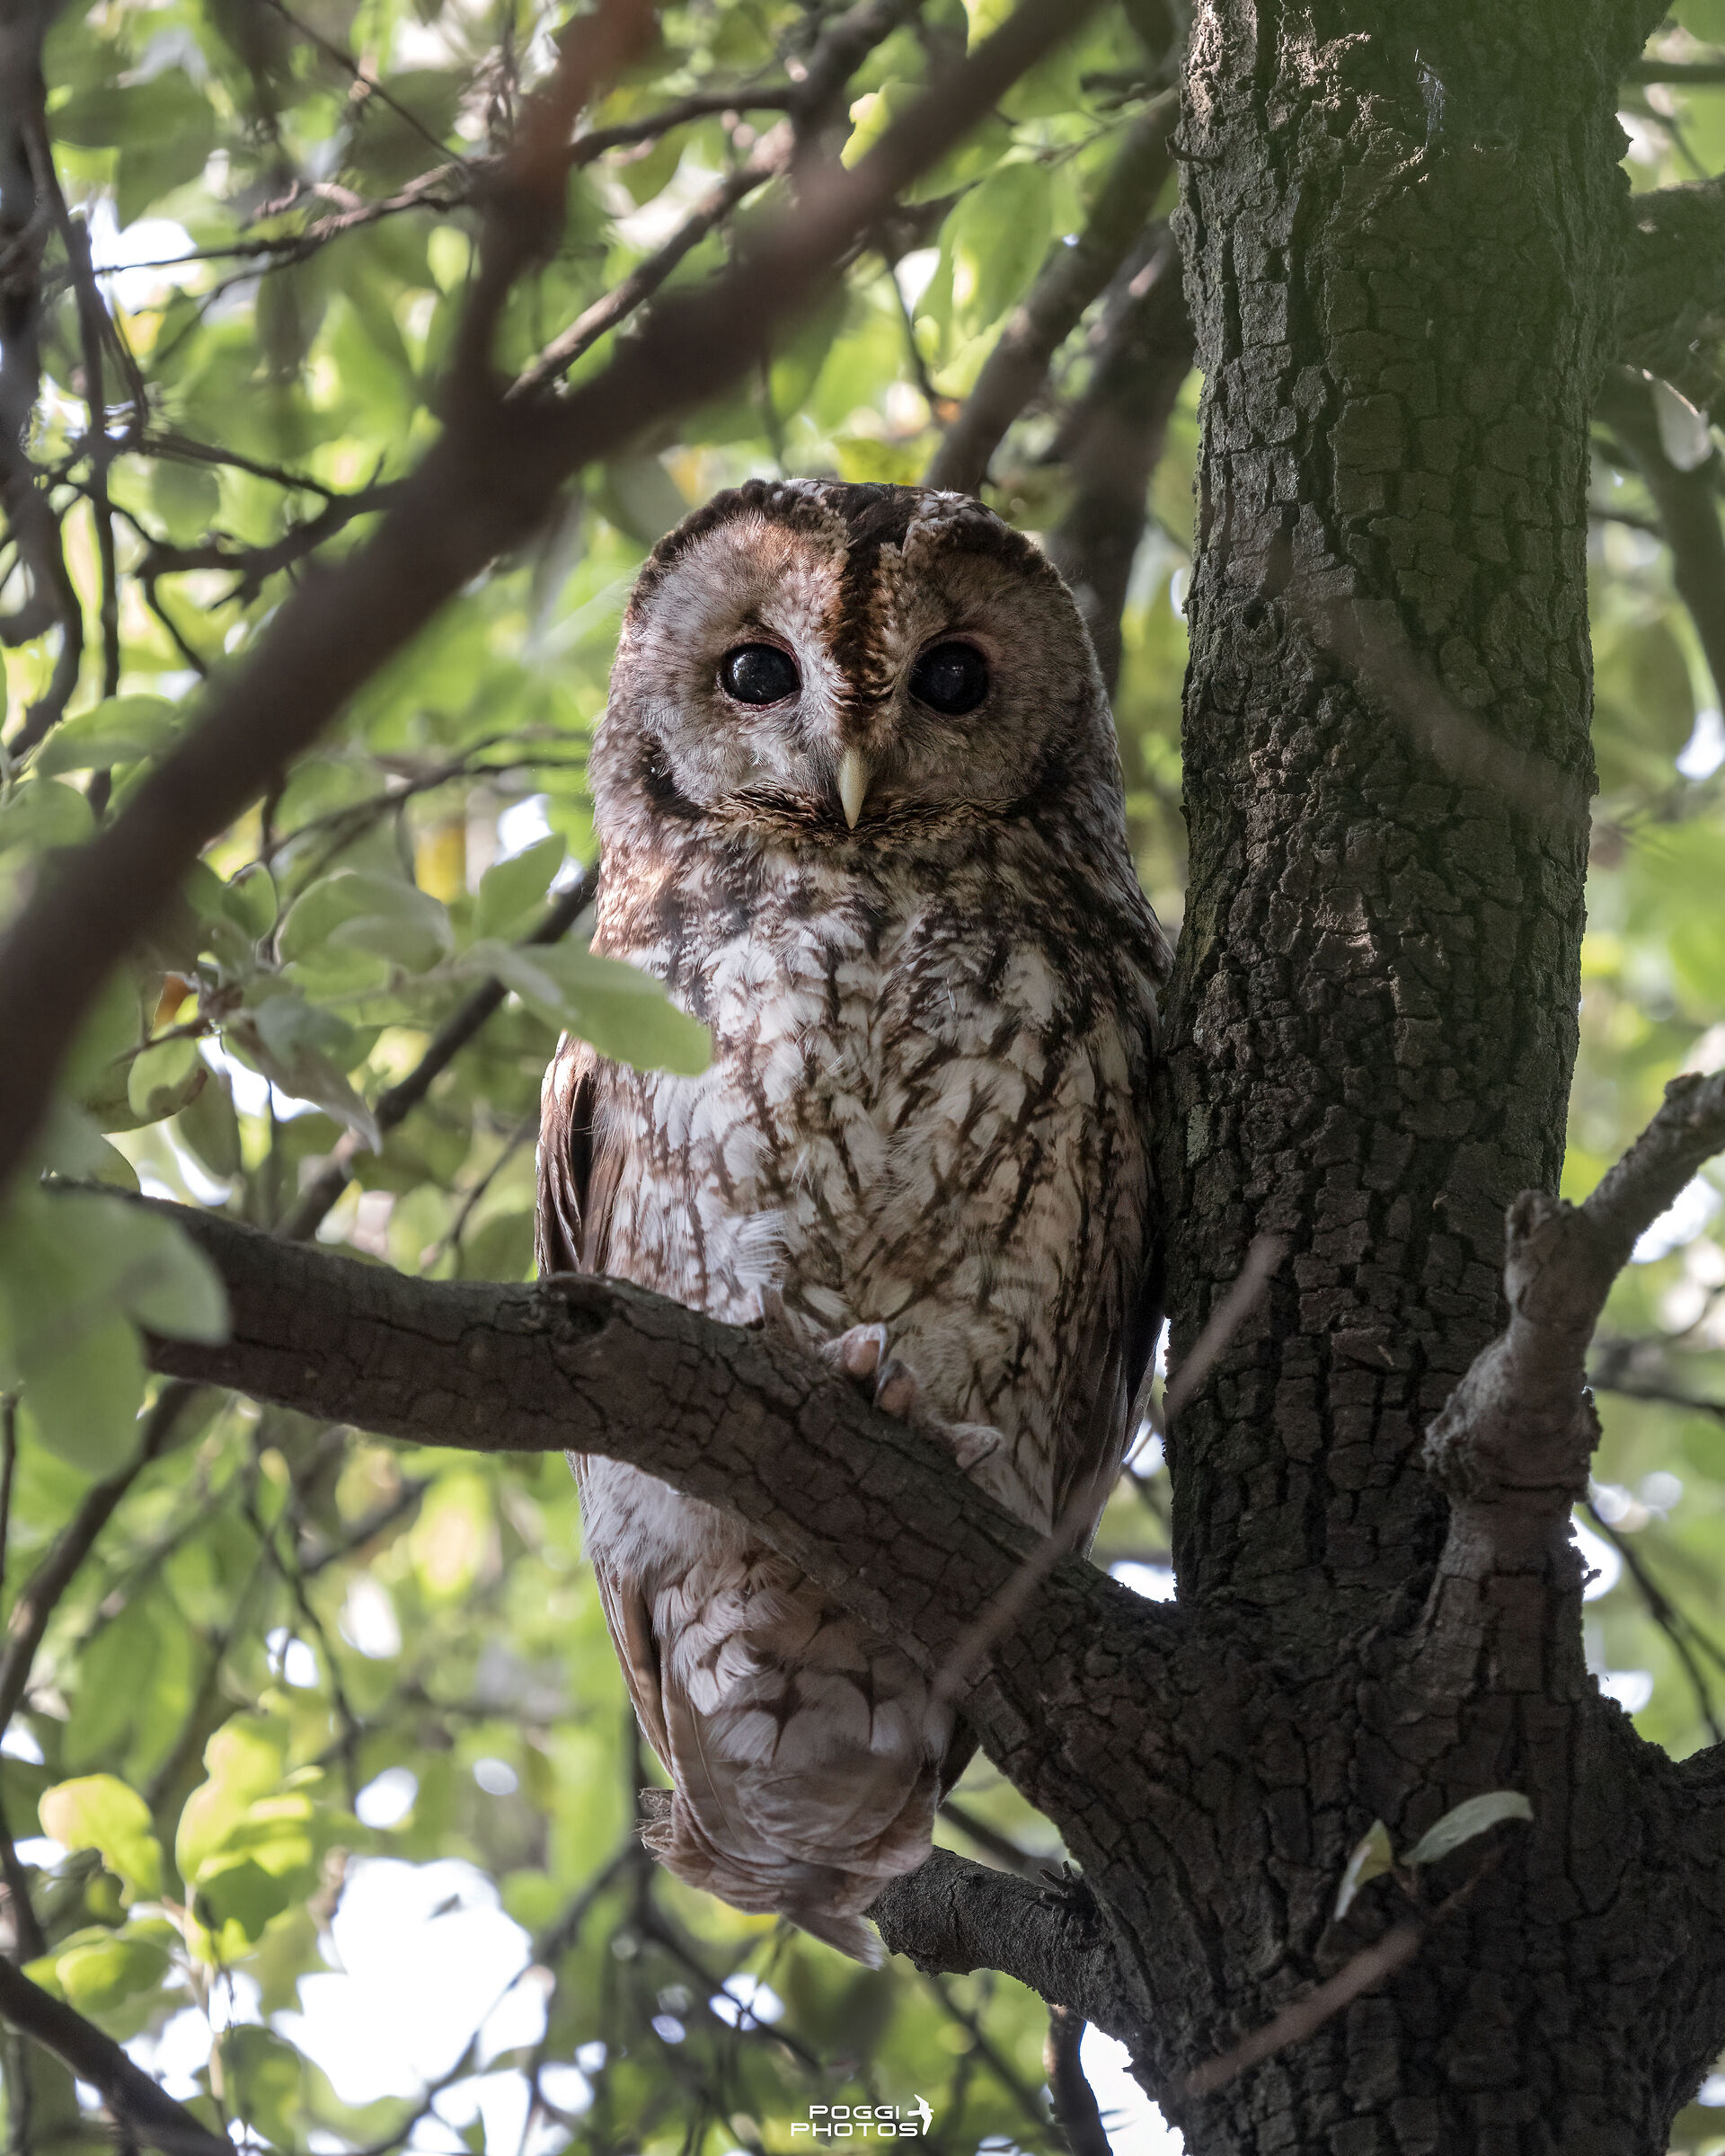 Tawny owl at Villa Borghese...